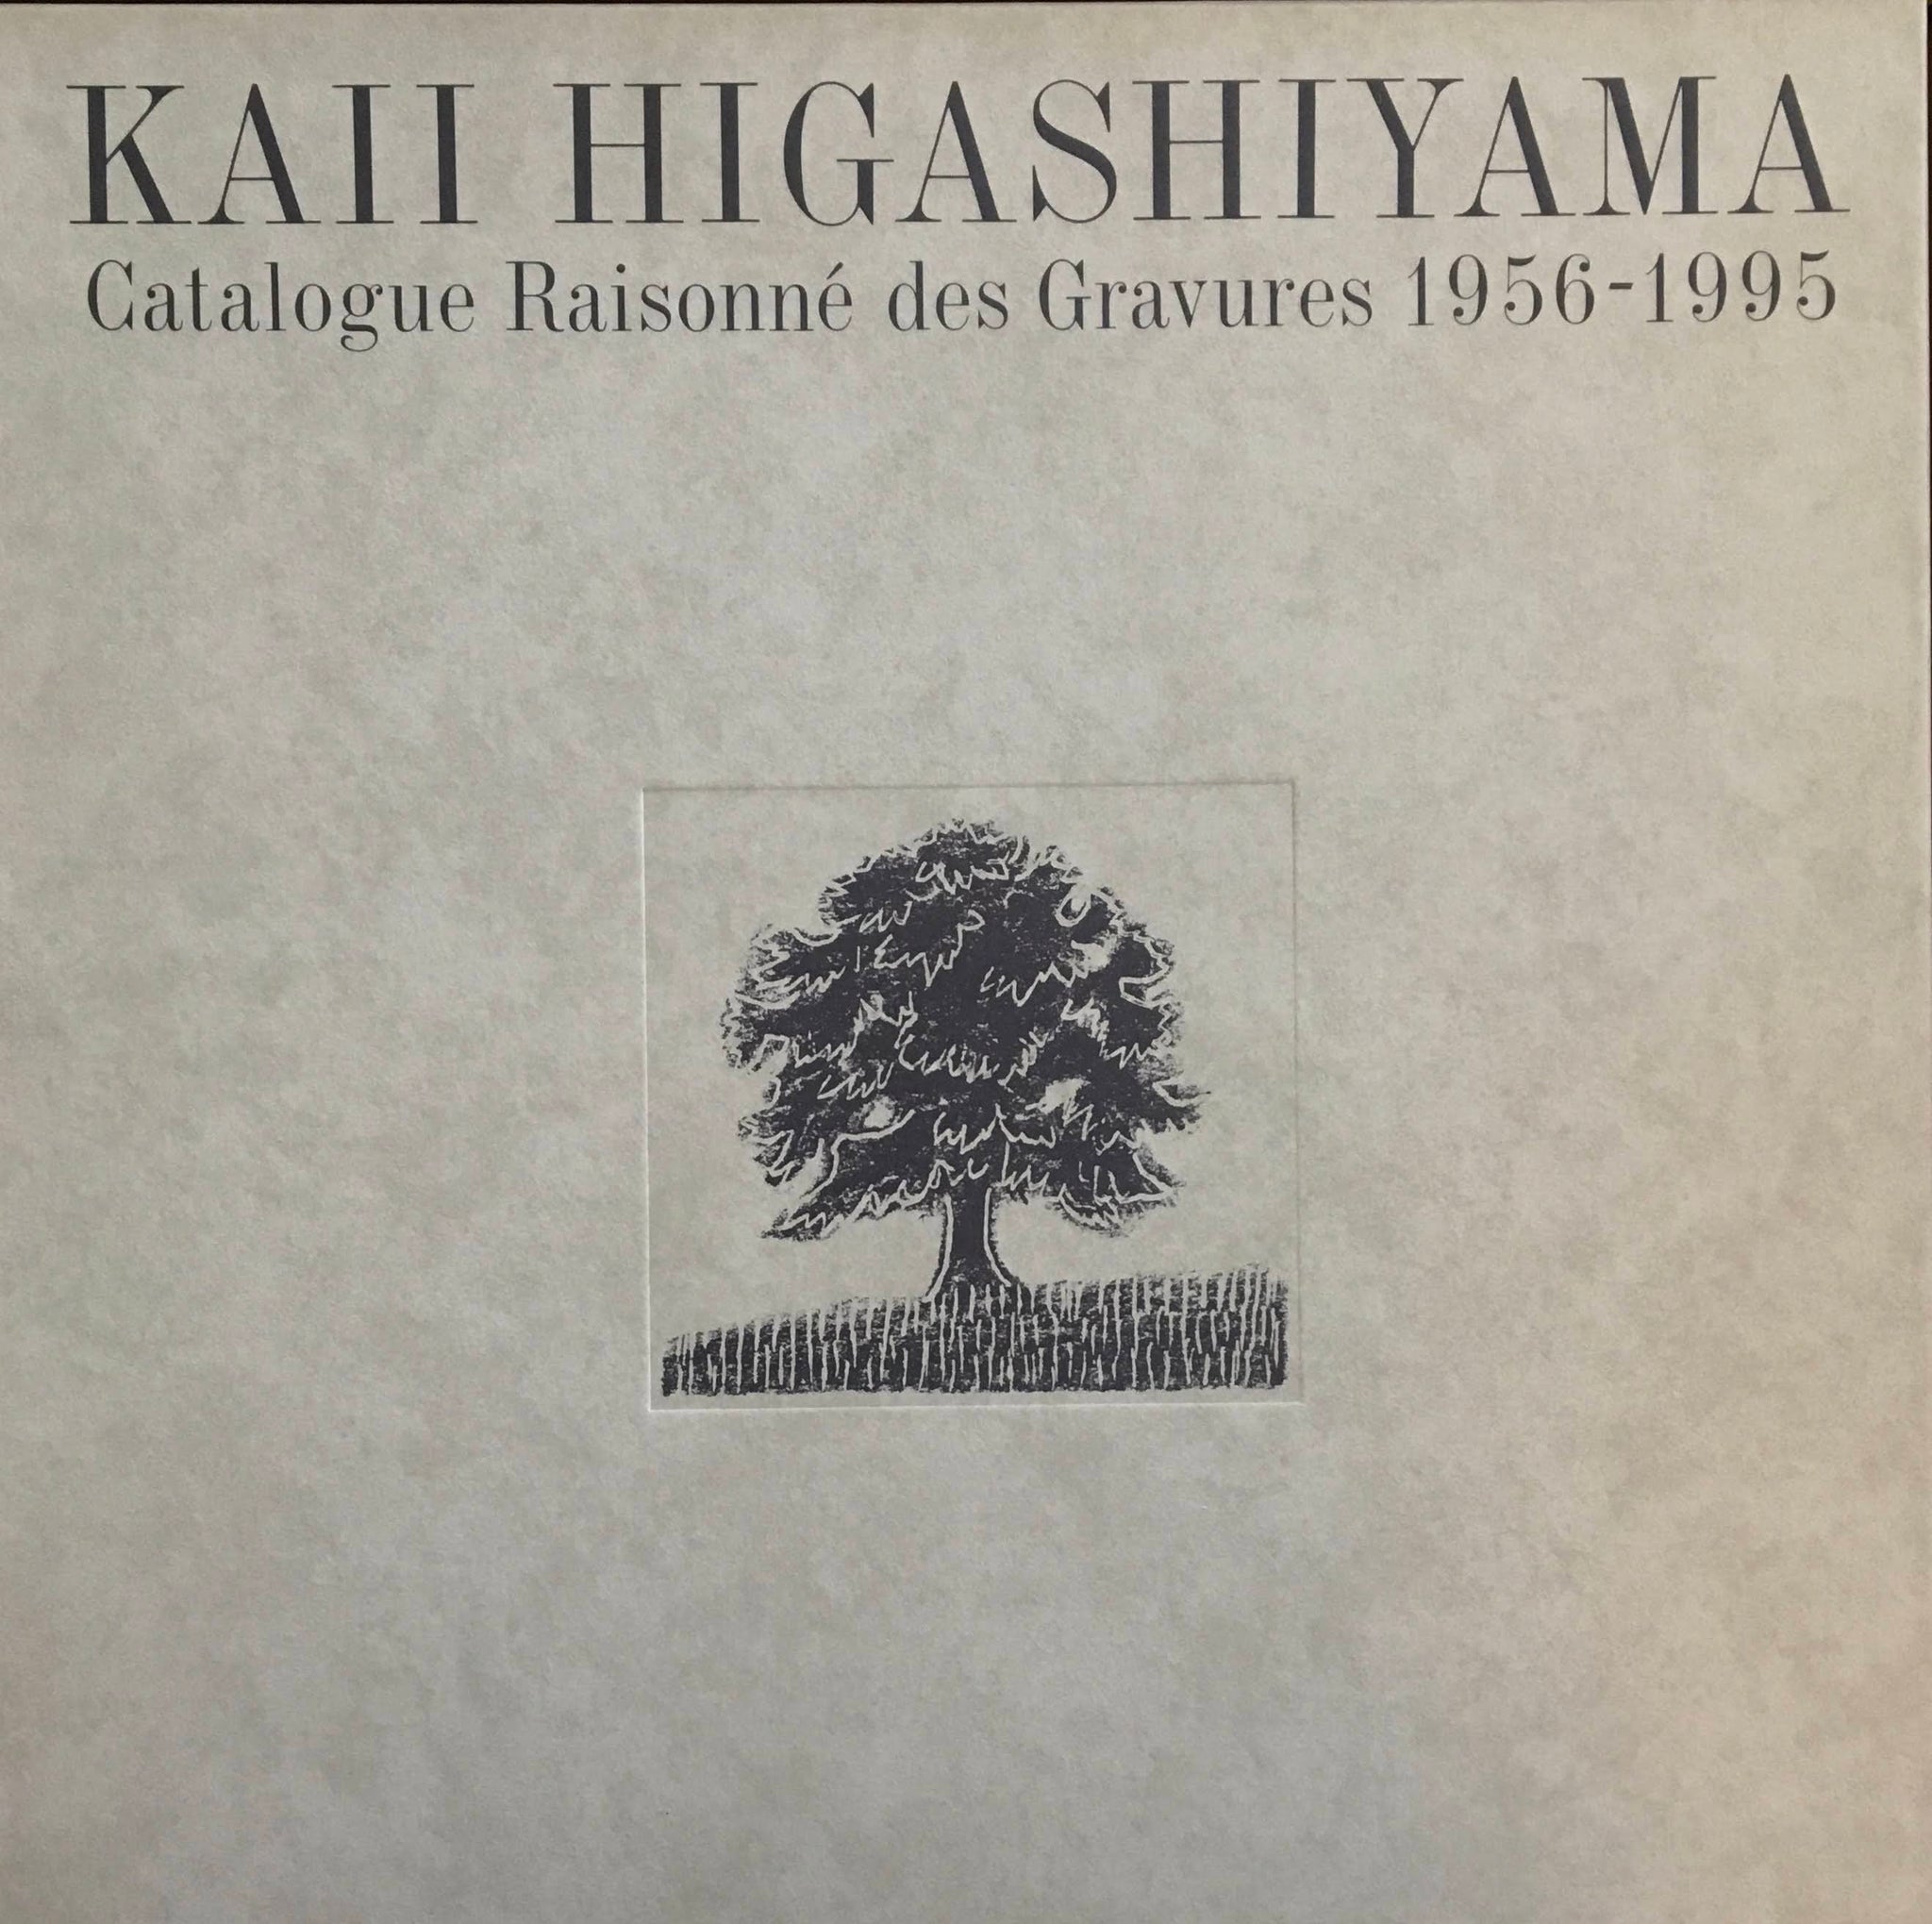 東山魁夷全版画集 完全版 1956-2000 大量注文受付 - 本